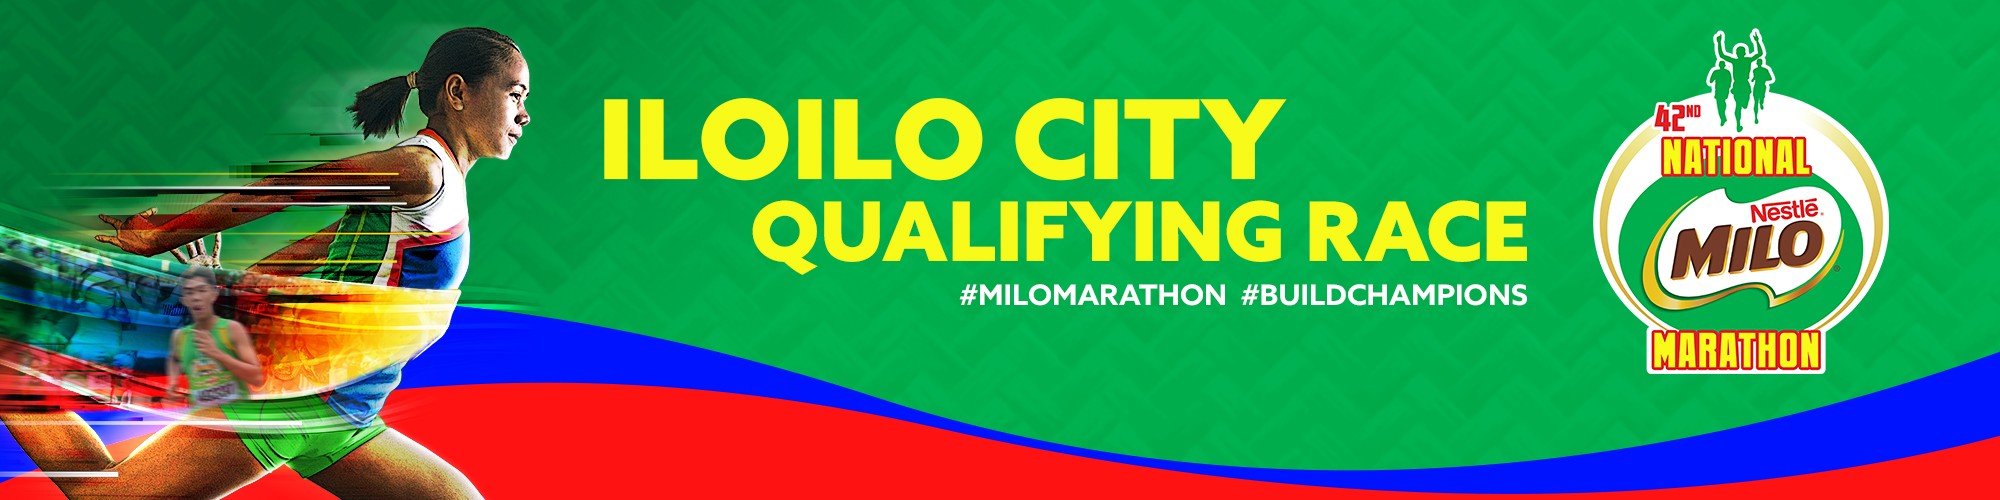 2019 National MILO Marathon Iloilo City